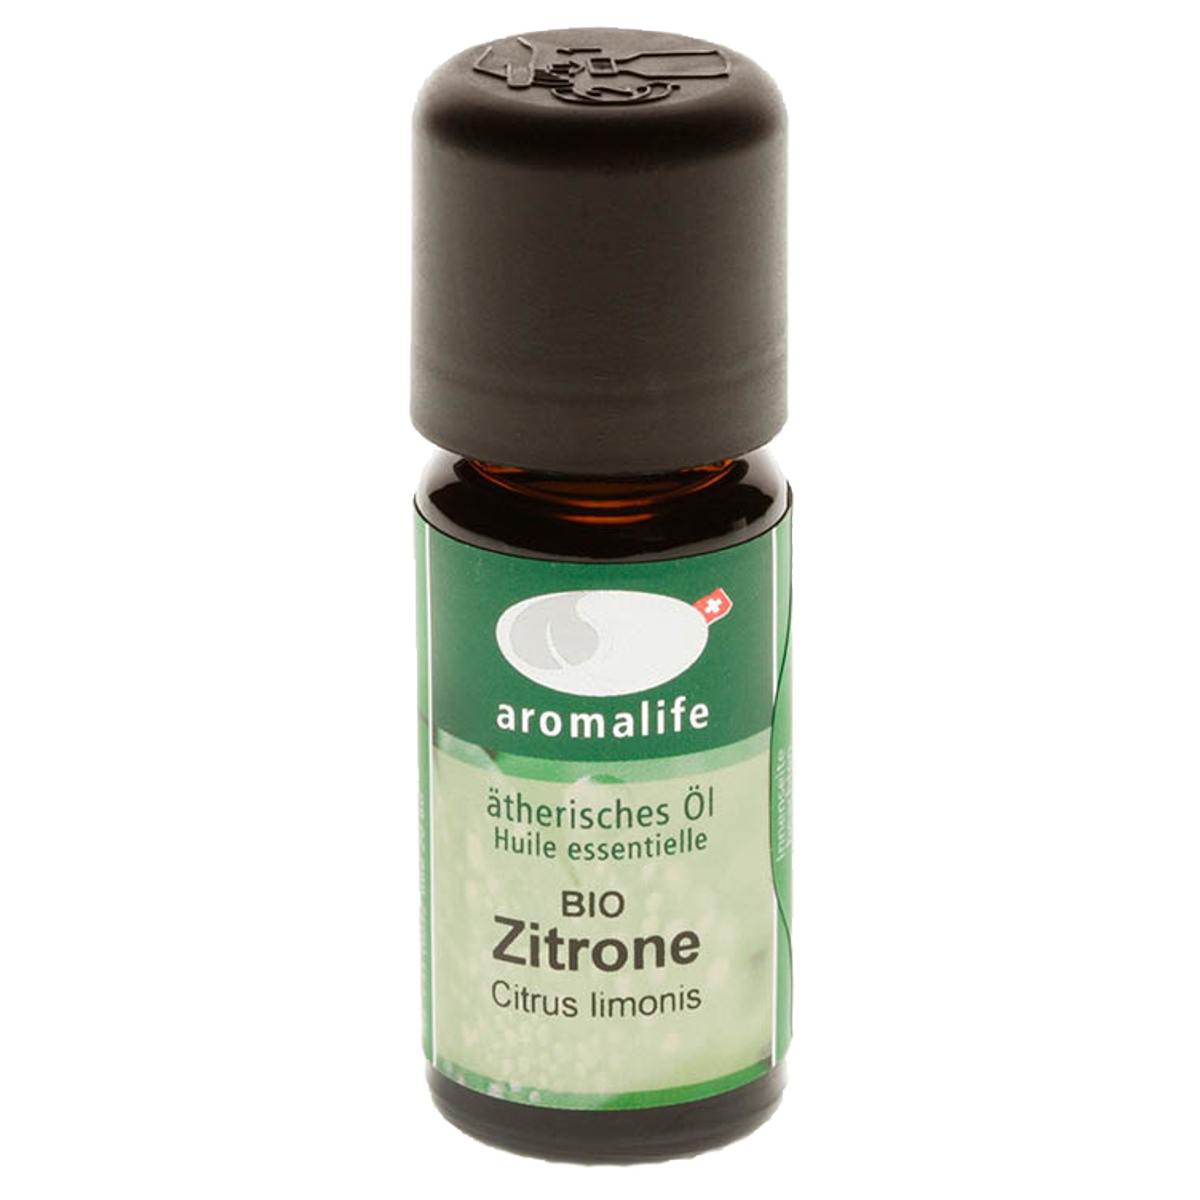 Aromalife Zitrone ätherisches Öl Bio 10 ml